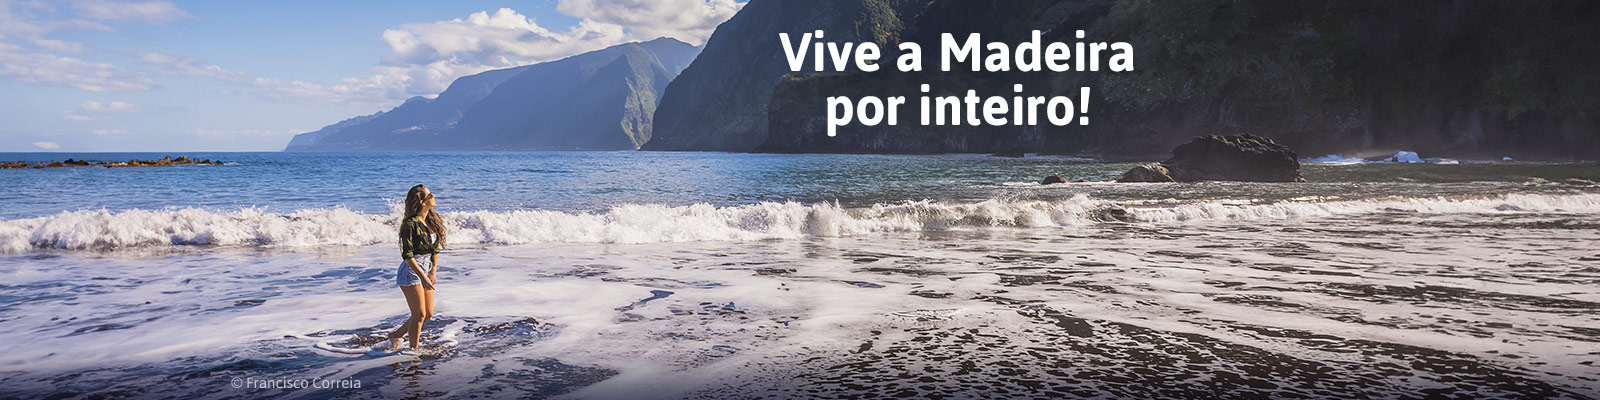 Viva a Madeira por inteiro!